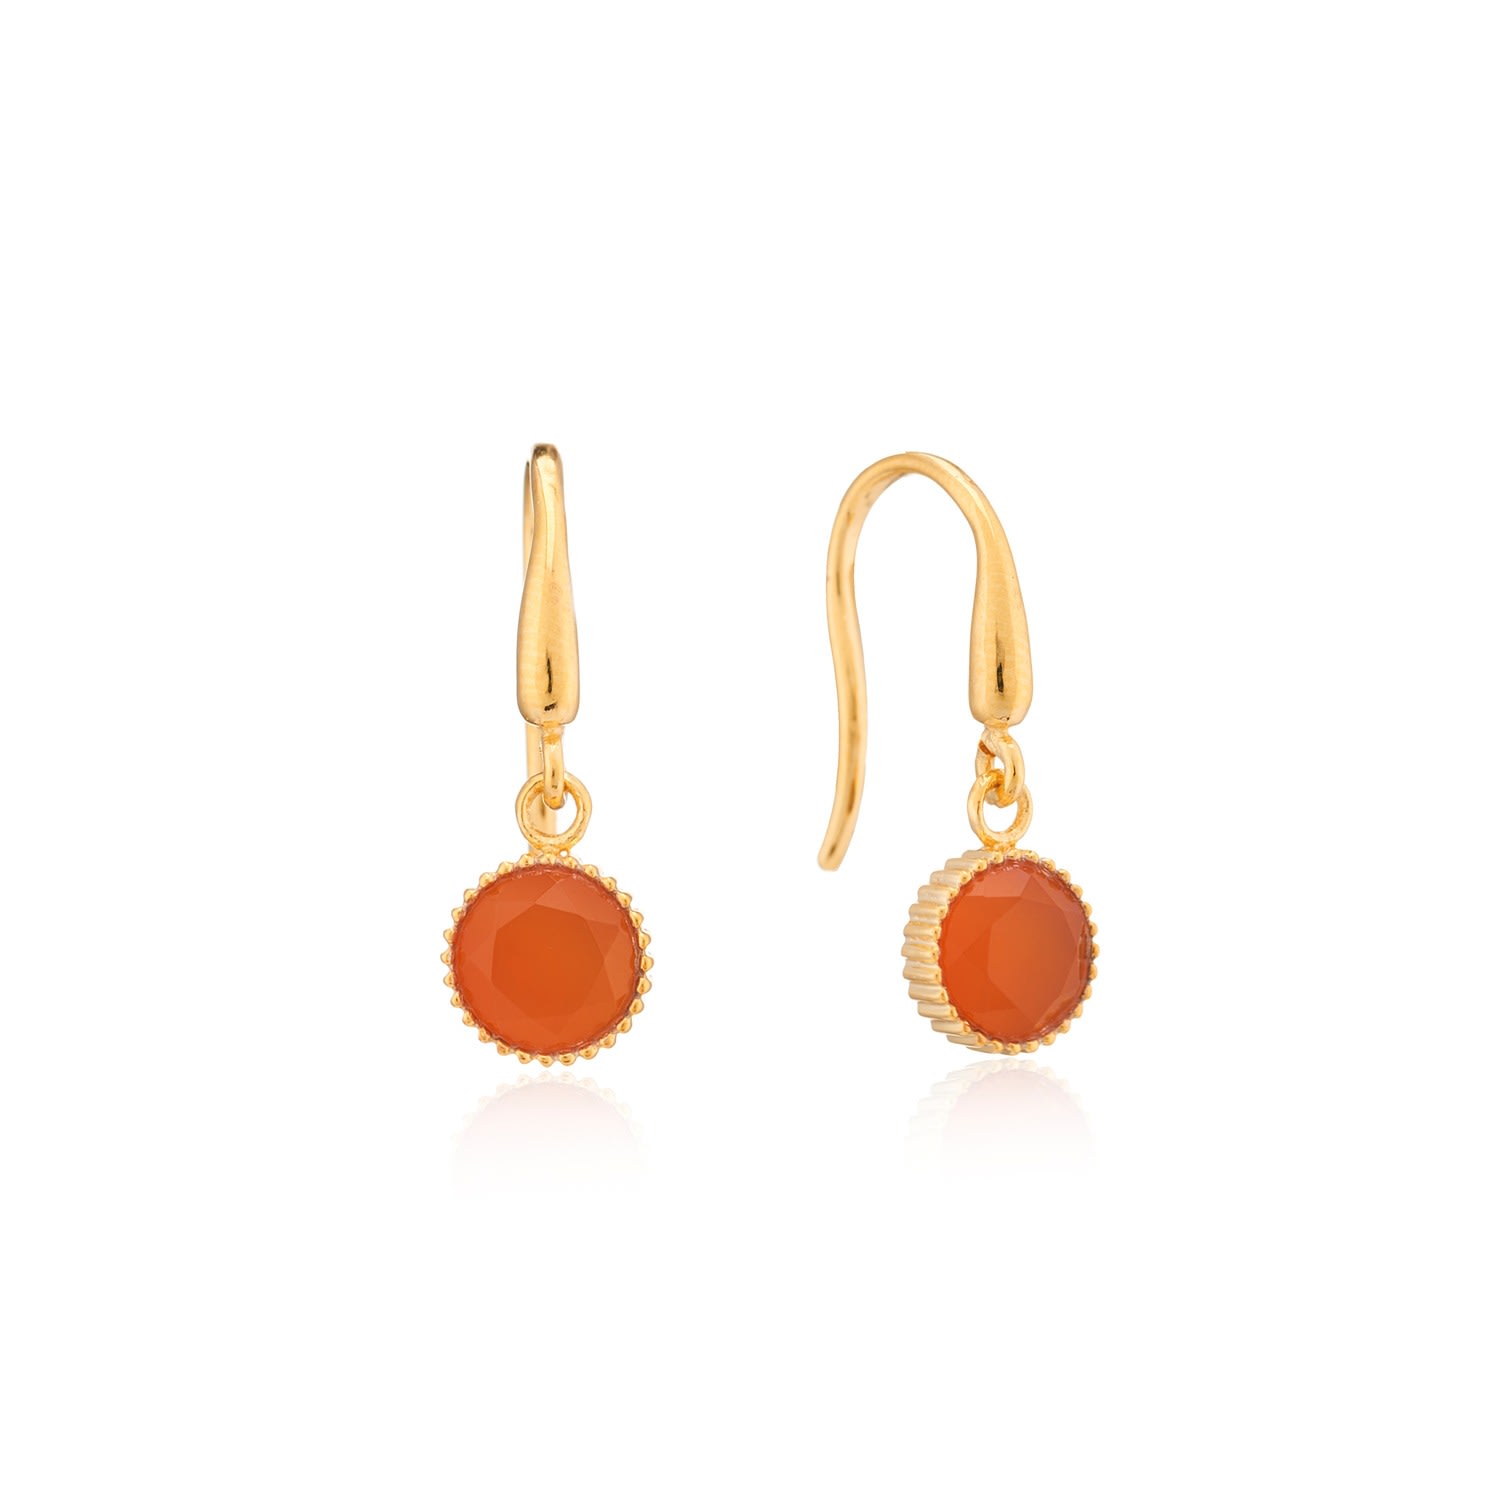 Auree Jewellery Women's Yellow / Orange / Gold Barcelona July Birthstone Hook Earrings Carnelian